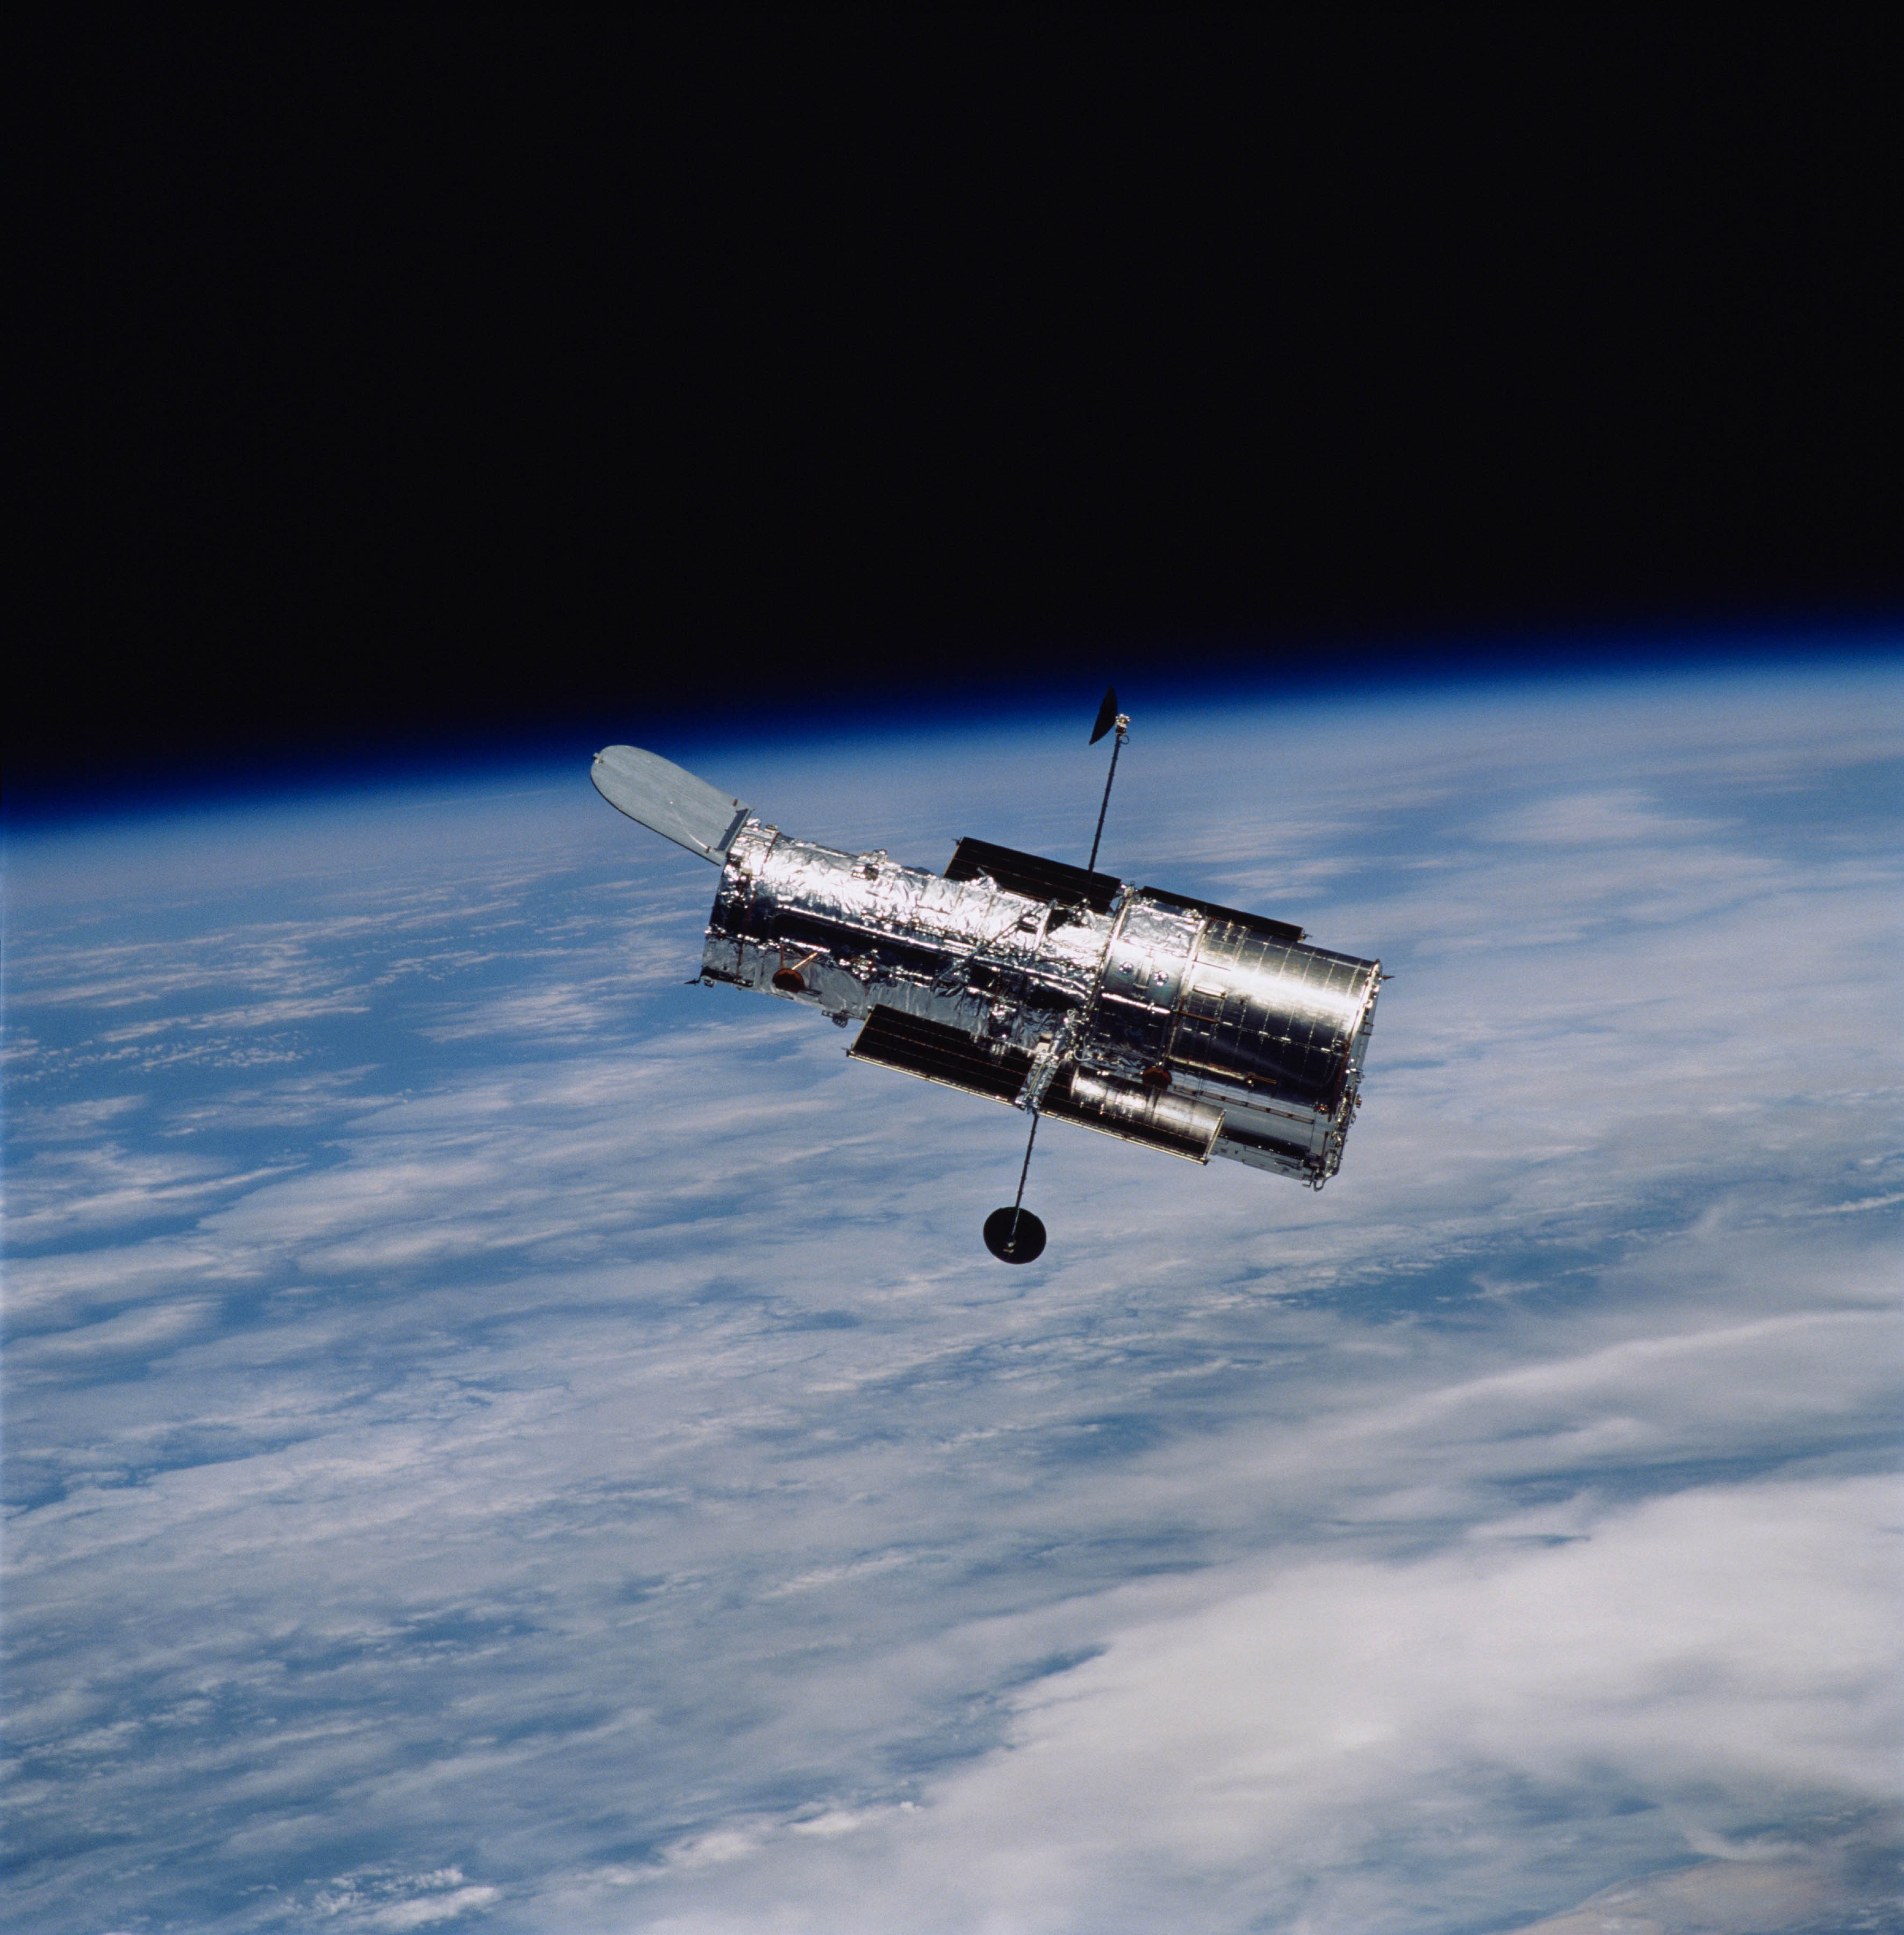 Scully Discurso Investigación Sustituto del Telescopio Hubble representa nuevo desafío astronómico